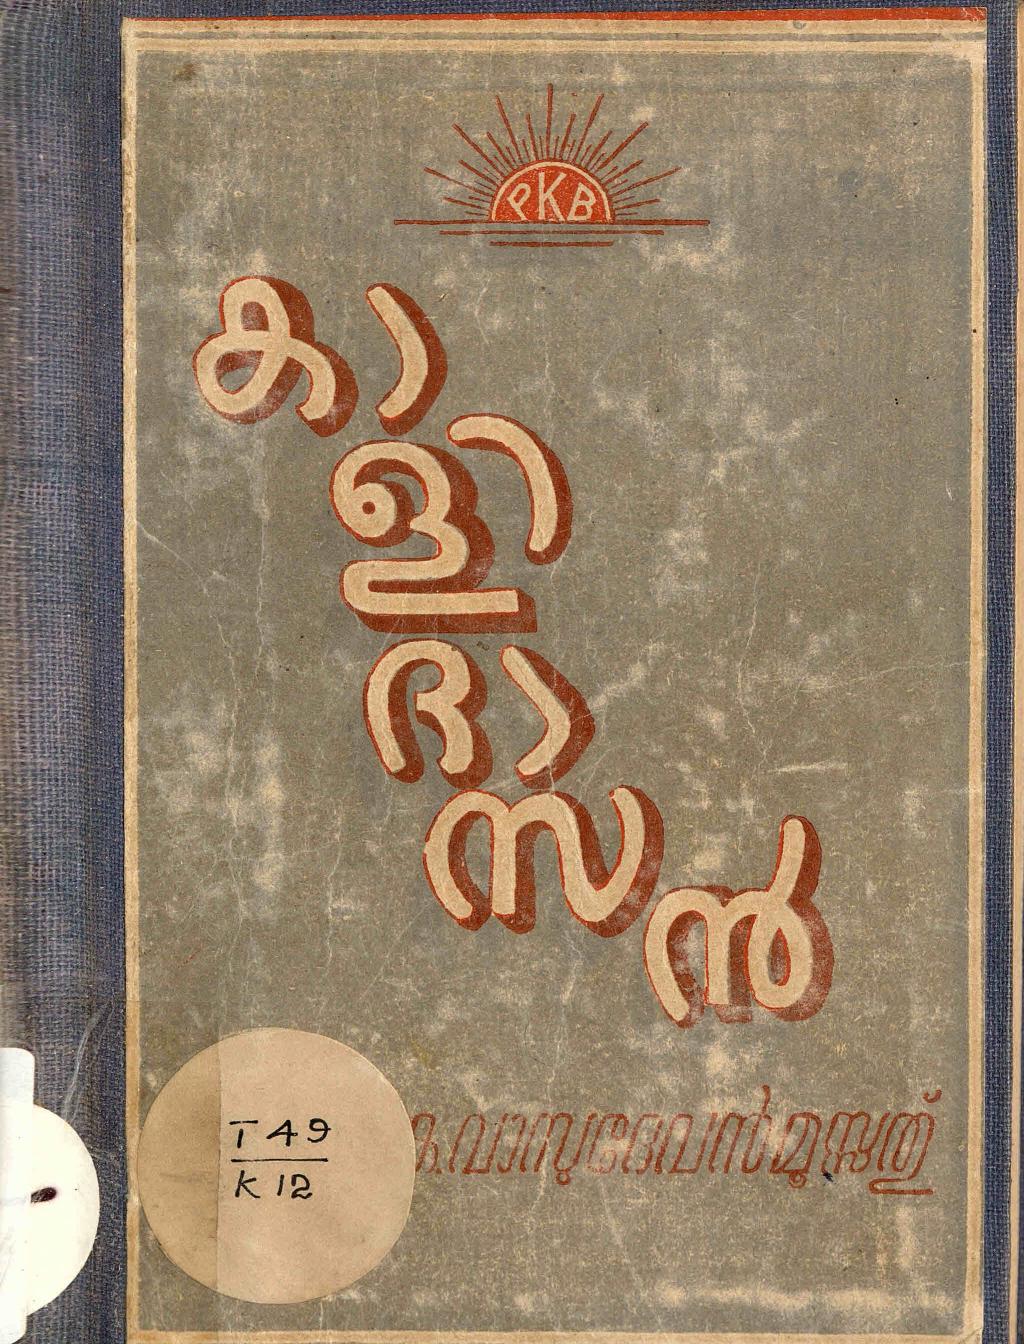 1965 - കാളിദാസൻ - കെ. വാസുദേവൻ മൂസ്സത്